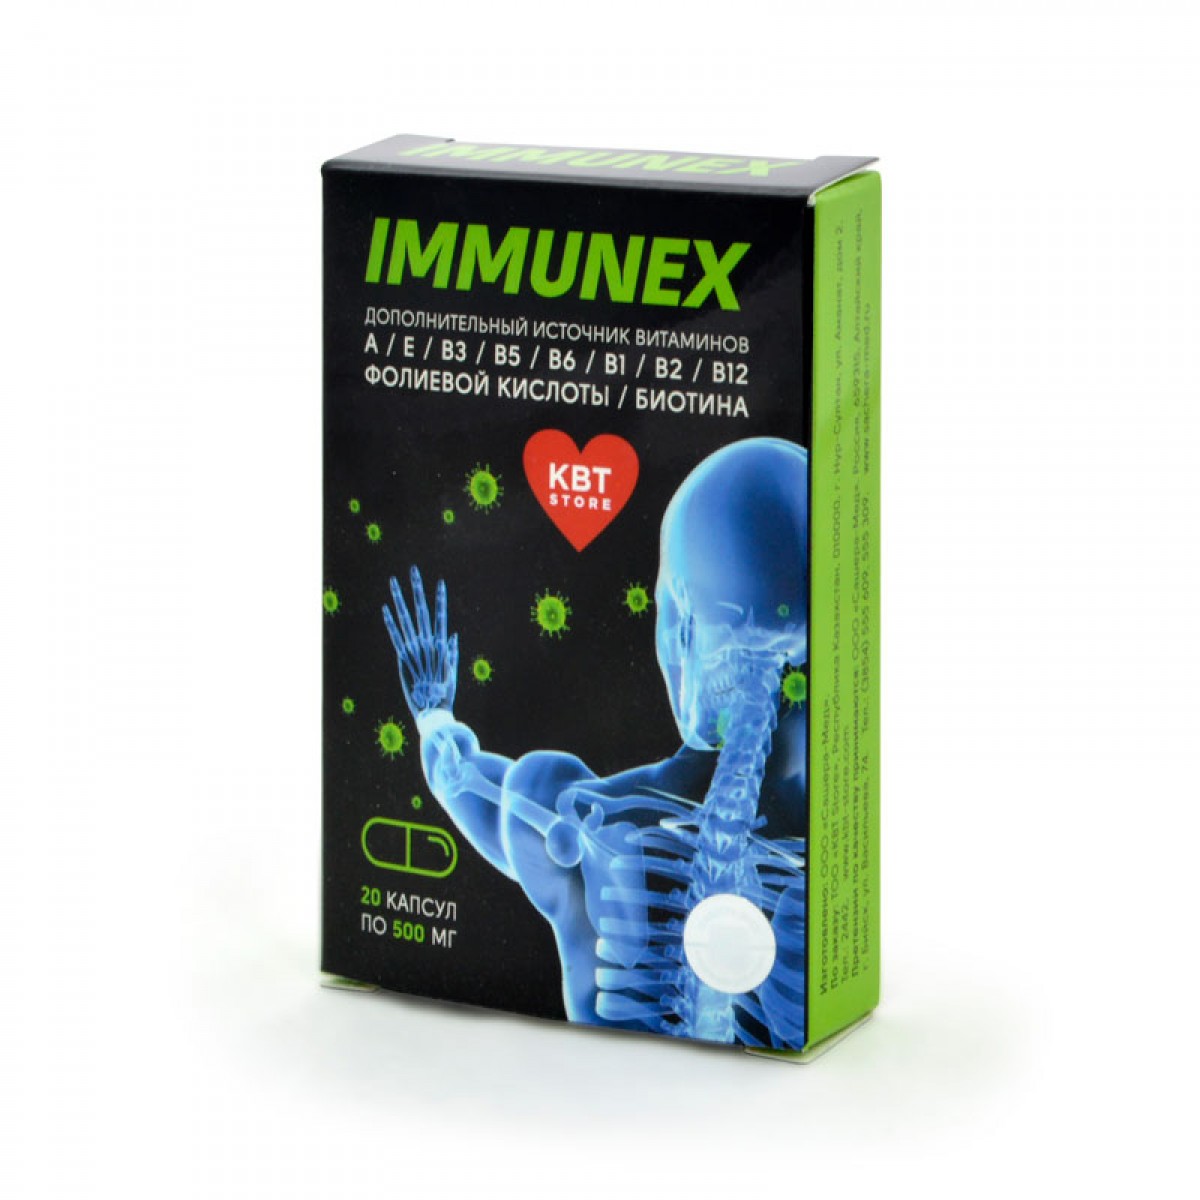 Immunex, витаминный комплекс для иммунитета от Сашера-Мед, купите в .